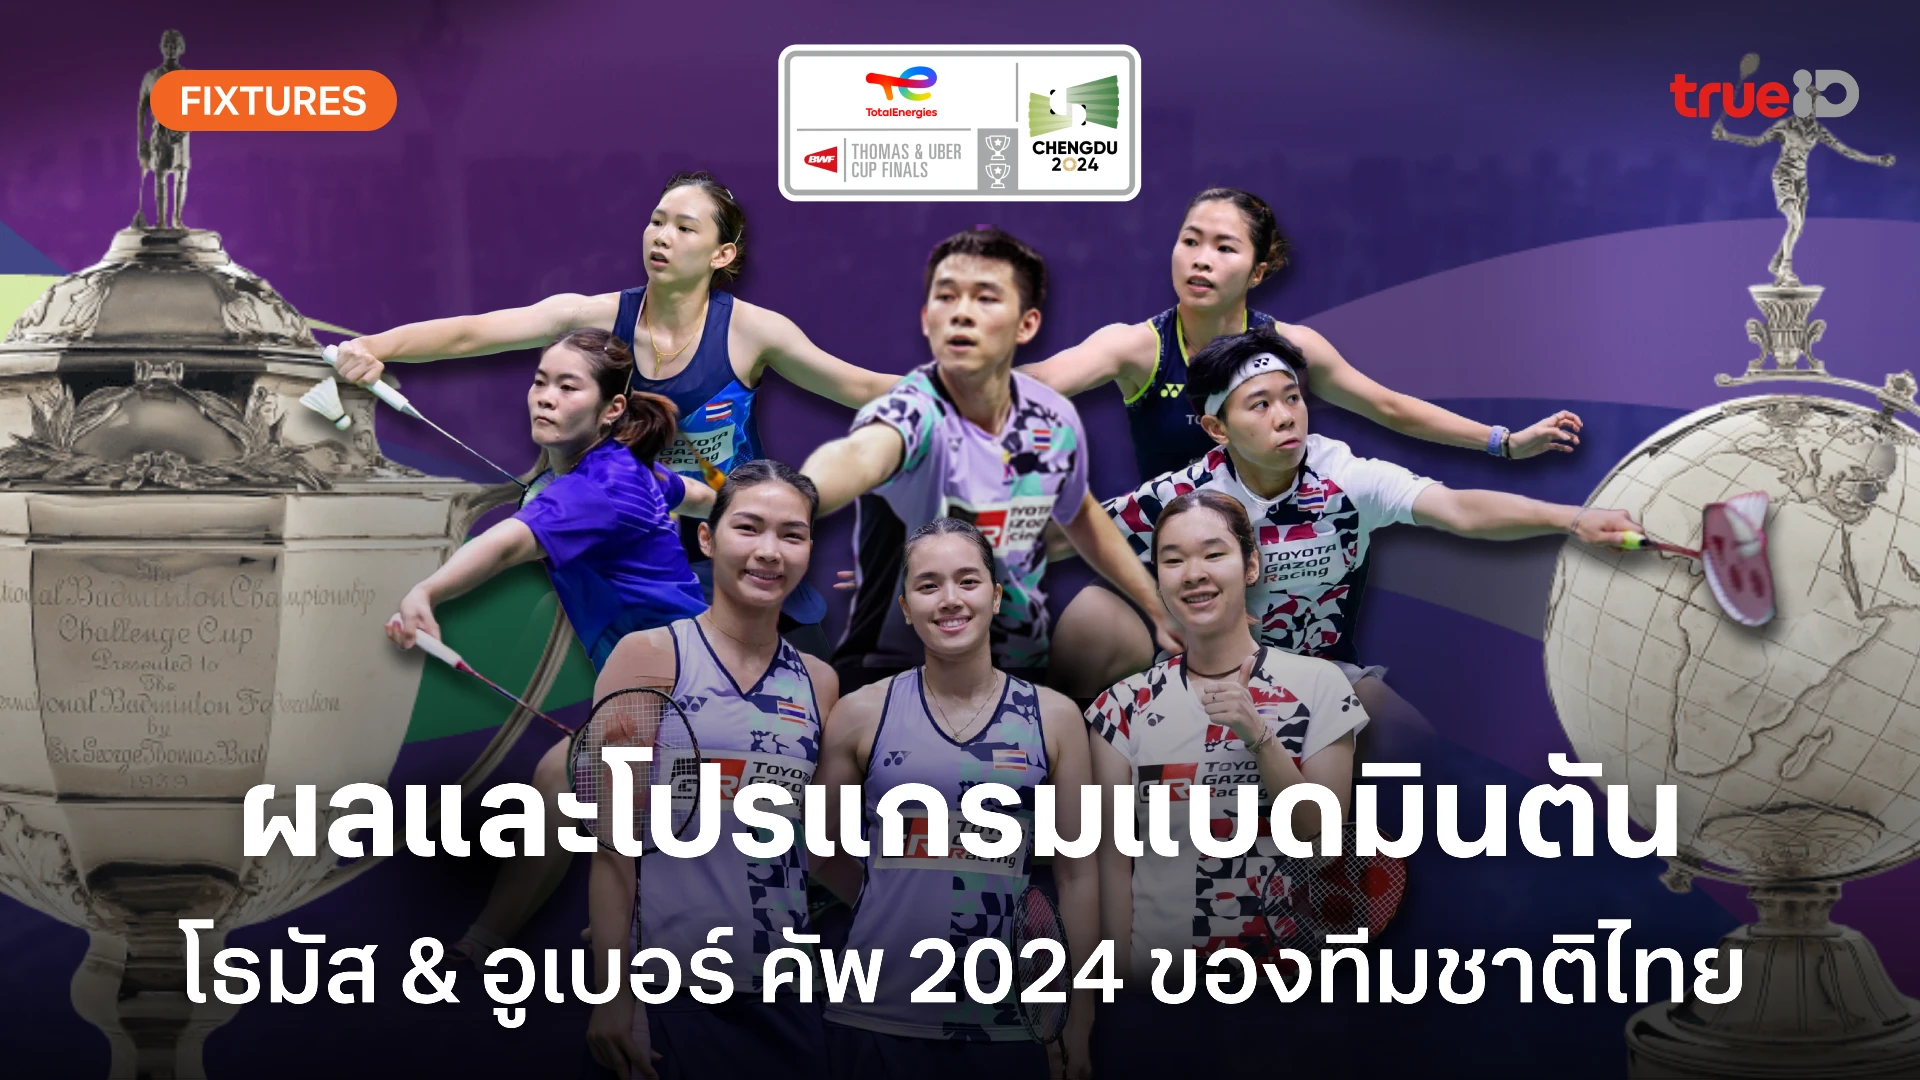 ผลและโปรแกรม แบดมินตัน 'โธมัส-อูเบอร์ คัพ 2024' ของทีมชาติไทย (ลิ้งก์ดูสด)